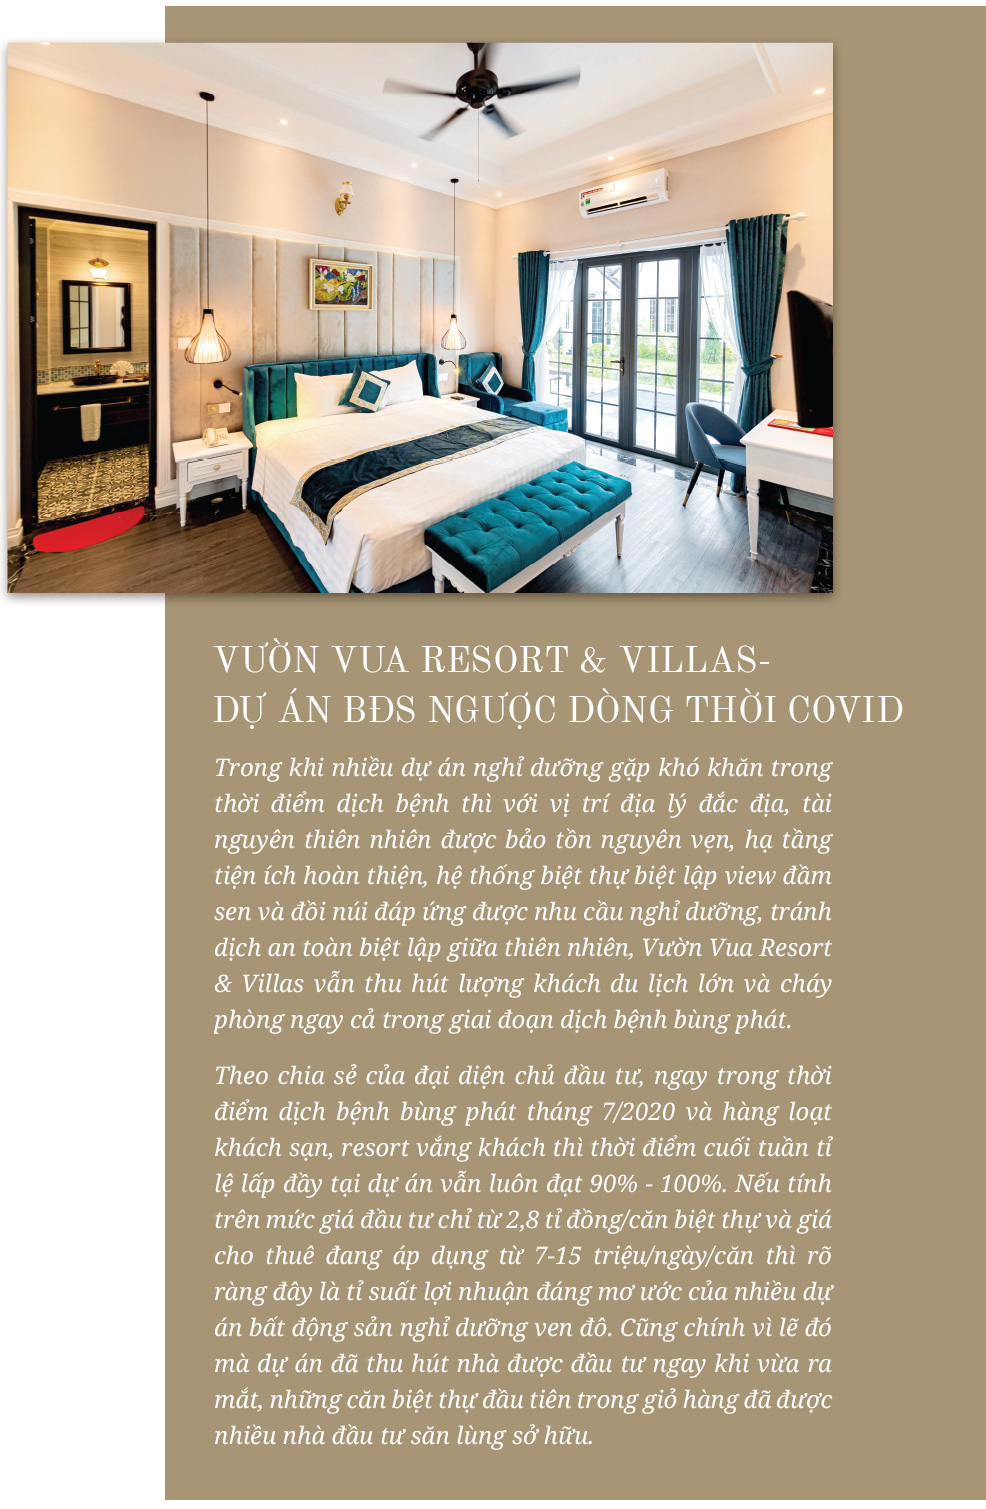 Đón đầu xu hướng sở hữu ngôi nhà thứ hai, Vườn Vua Resort & Villas thu hút nhà đầu tư với “lợi ích kép” sáng giá - Ảnh 11.